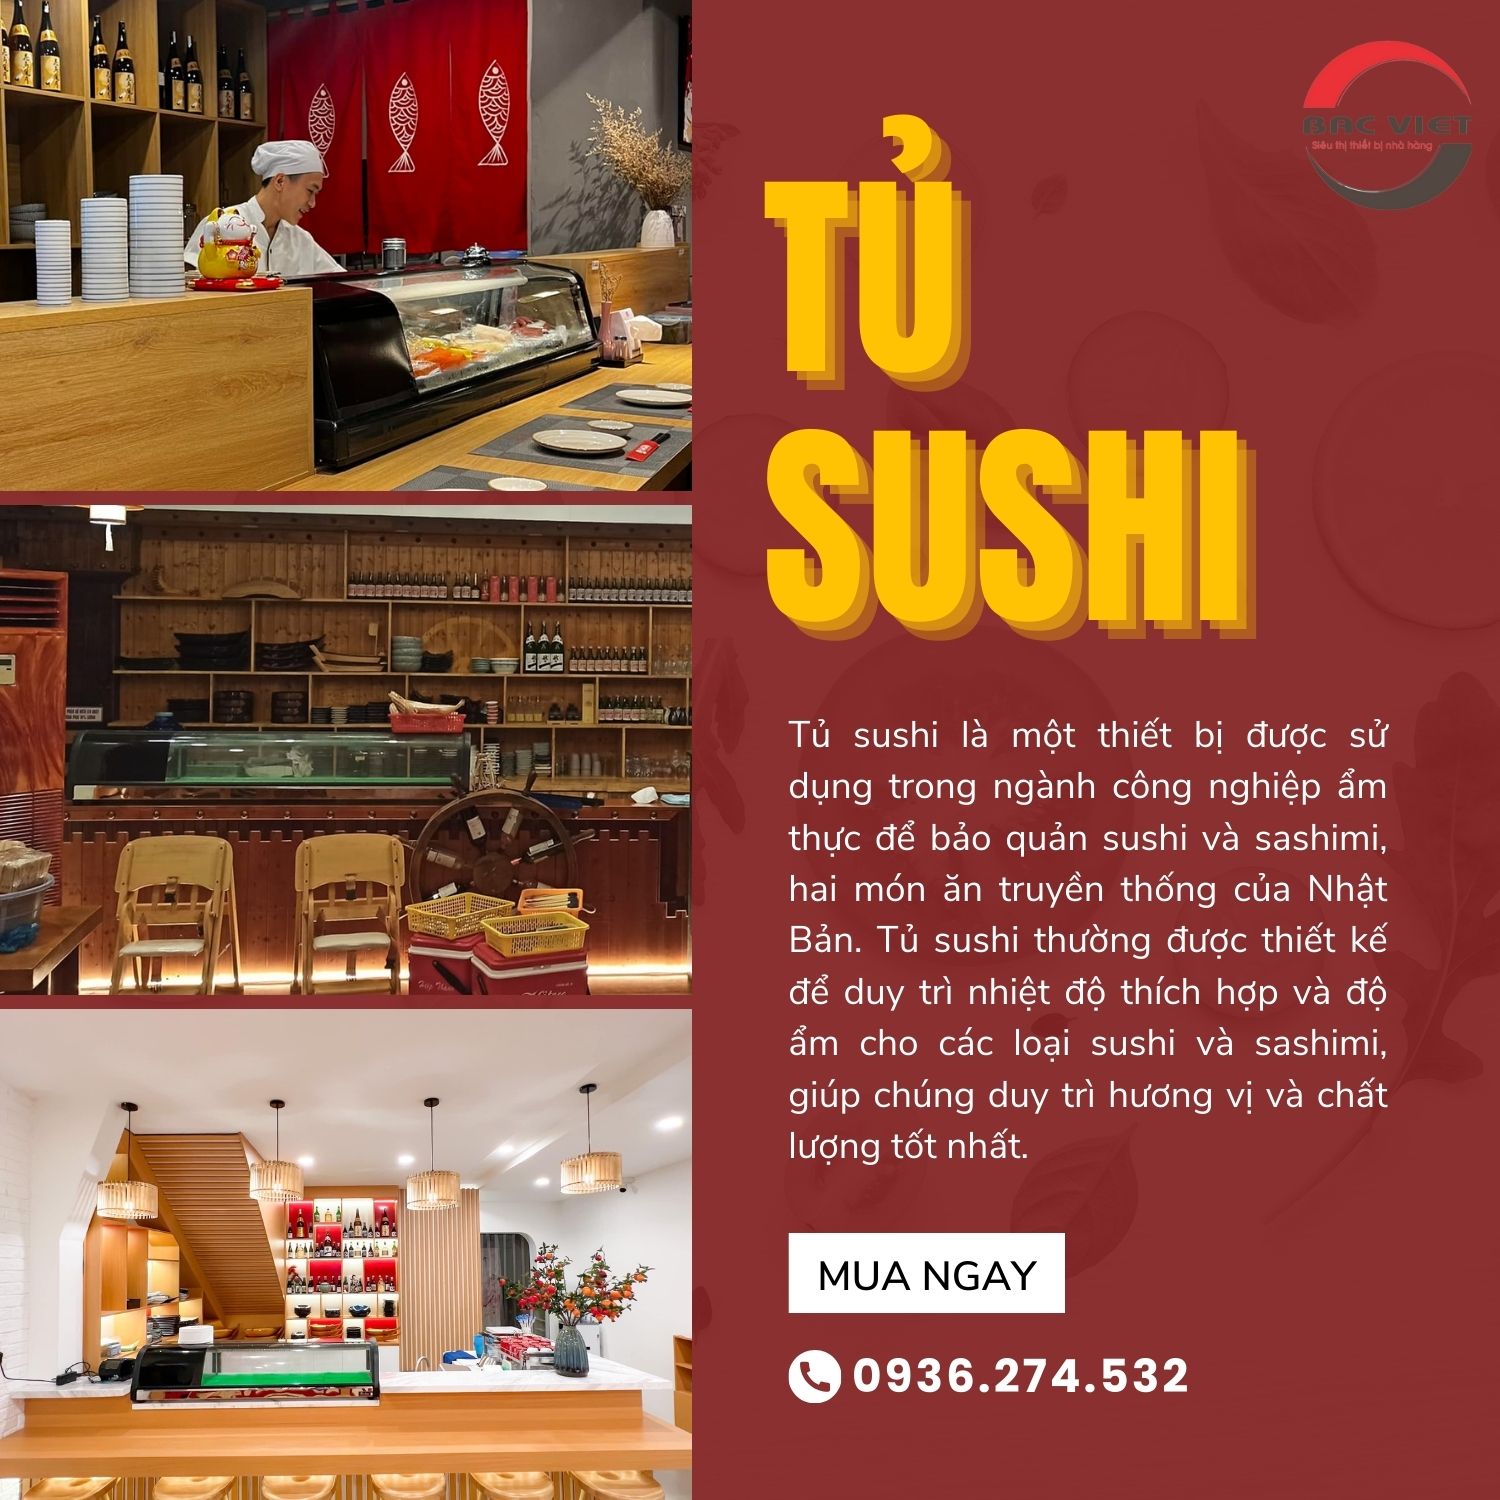 Tủ sushi 1 tầng: Sushi tươi ngon, sự bảo quản hoàn hảo